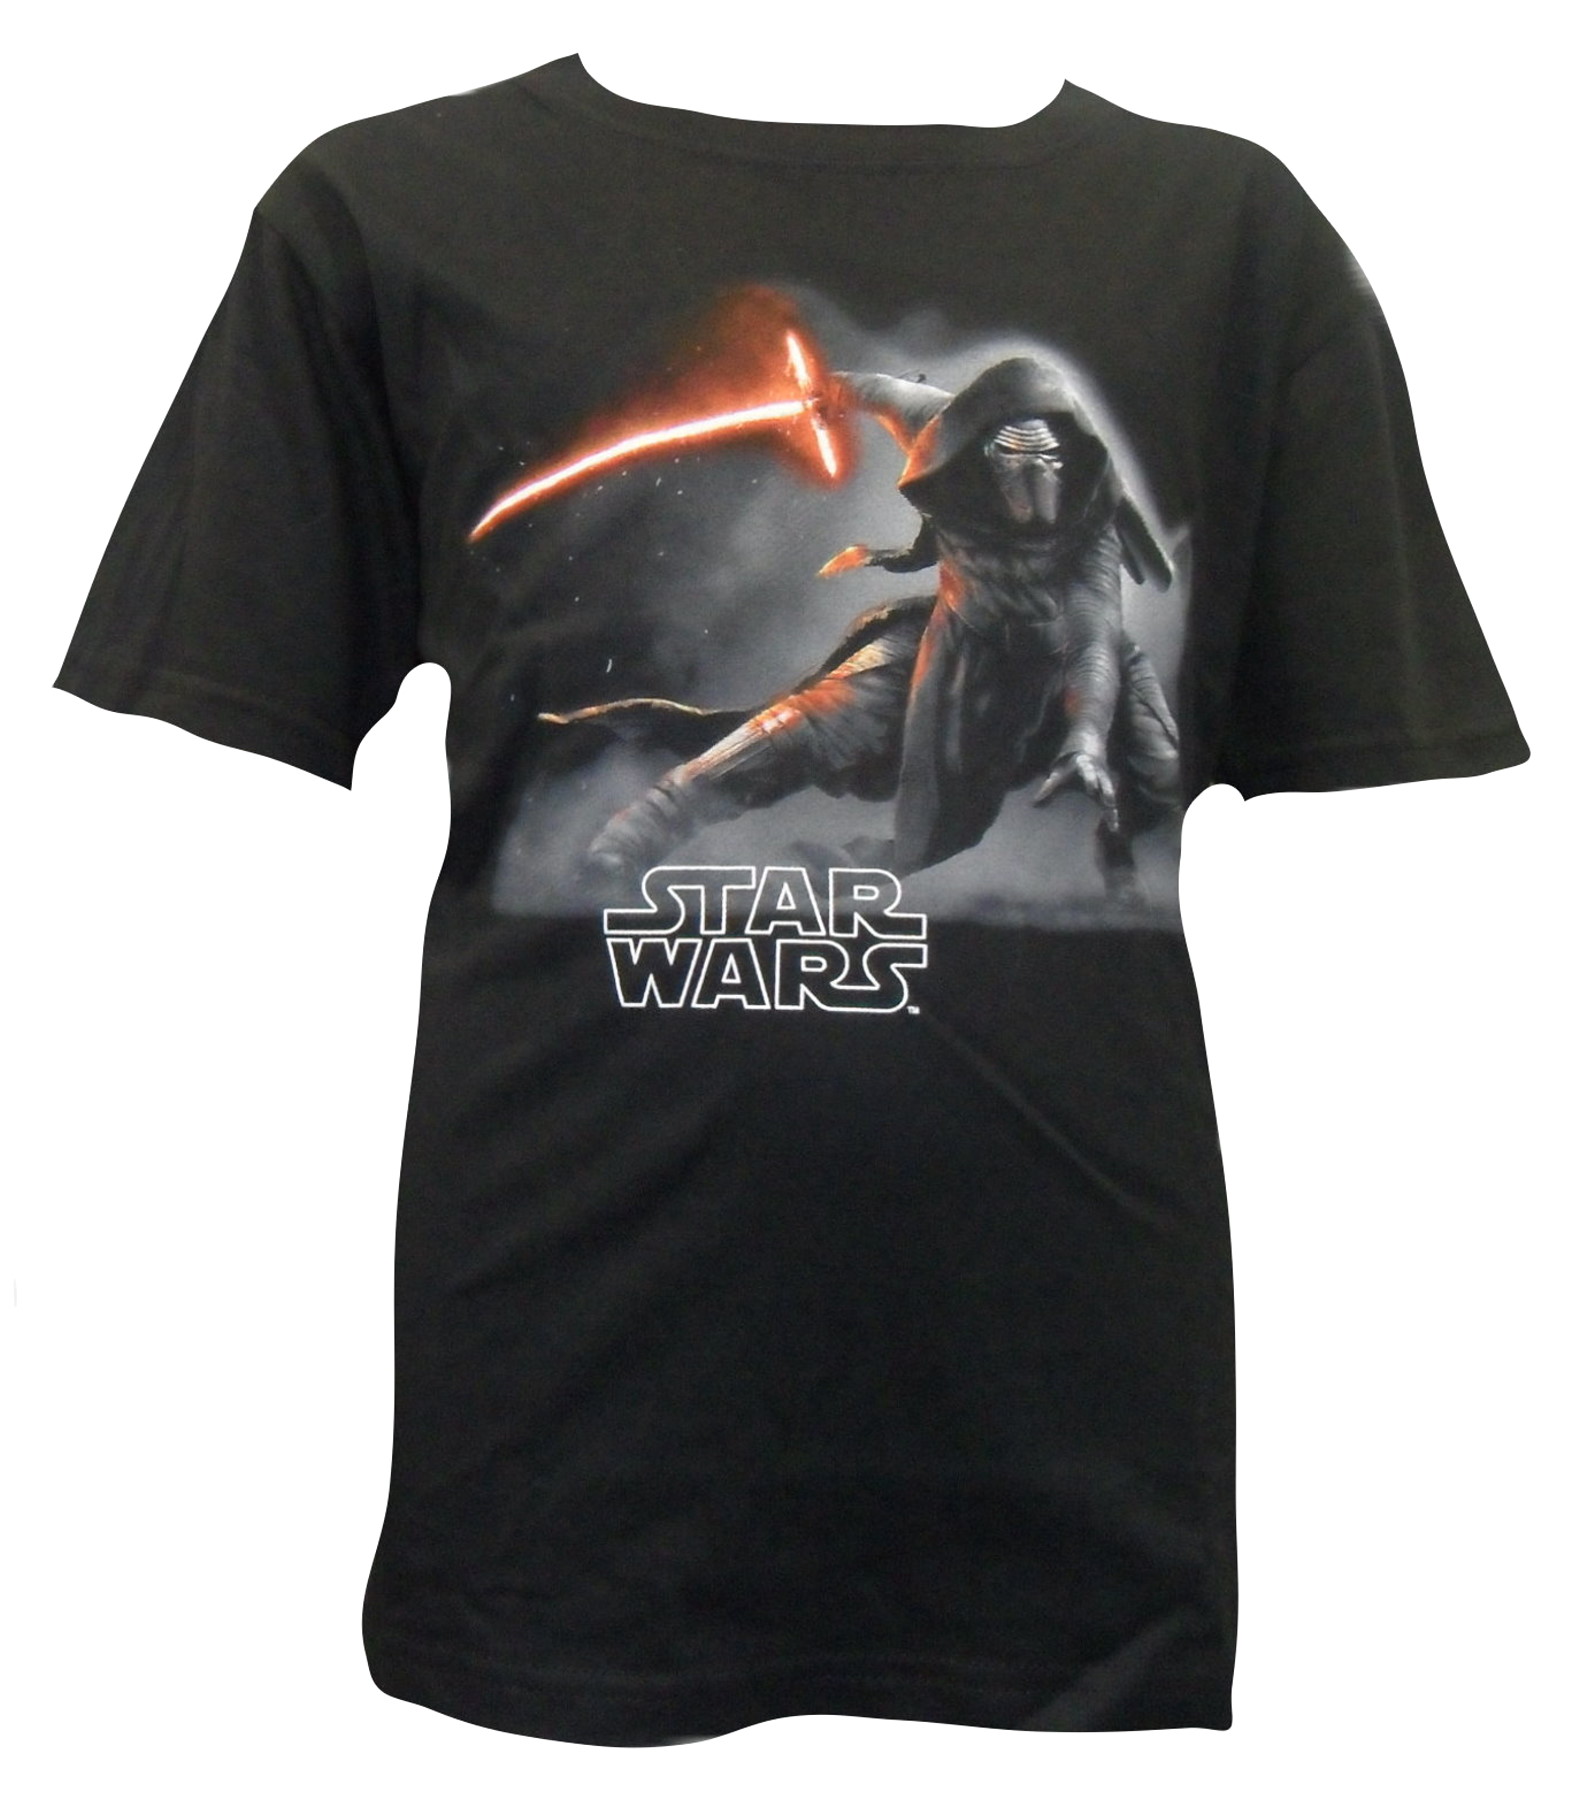 Star wars Chilren's T-shirt 23322.JPG  by Thingimijigs